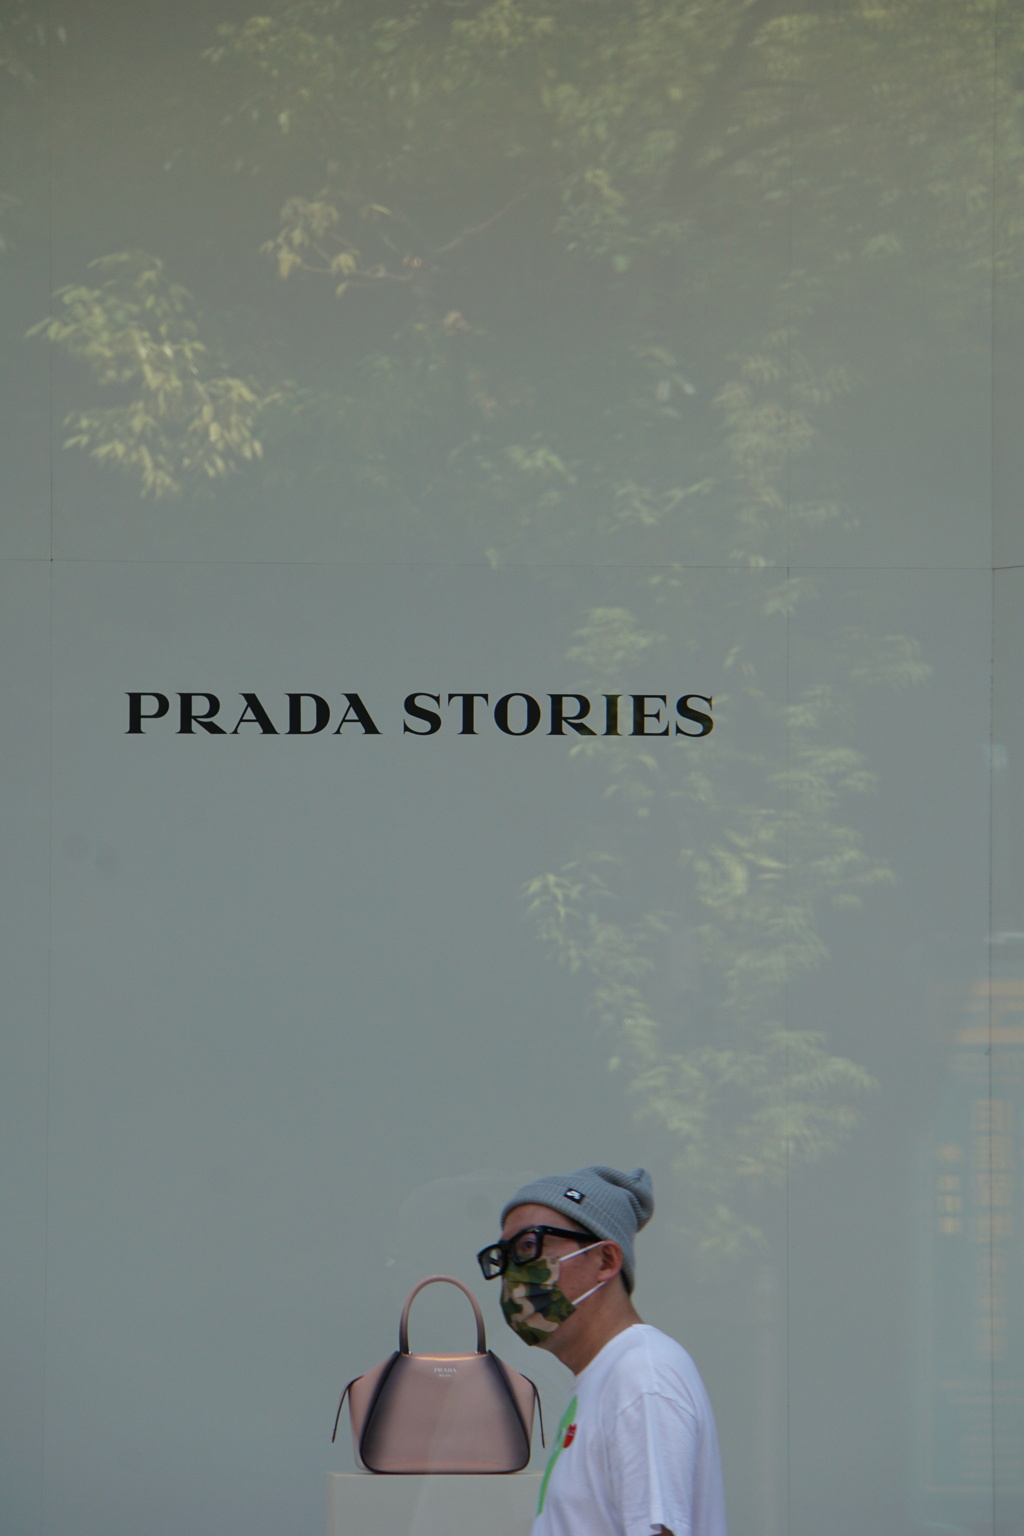 プラダとおじさんの物語